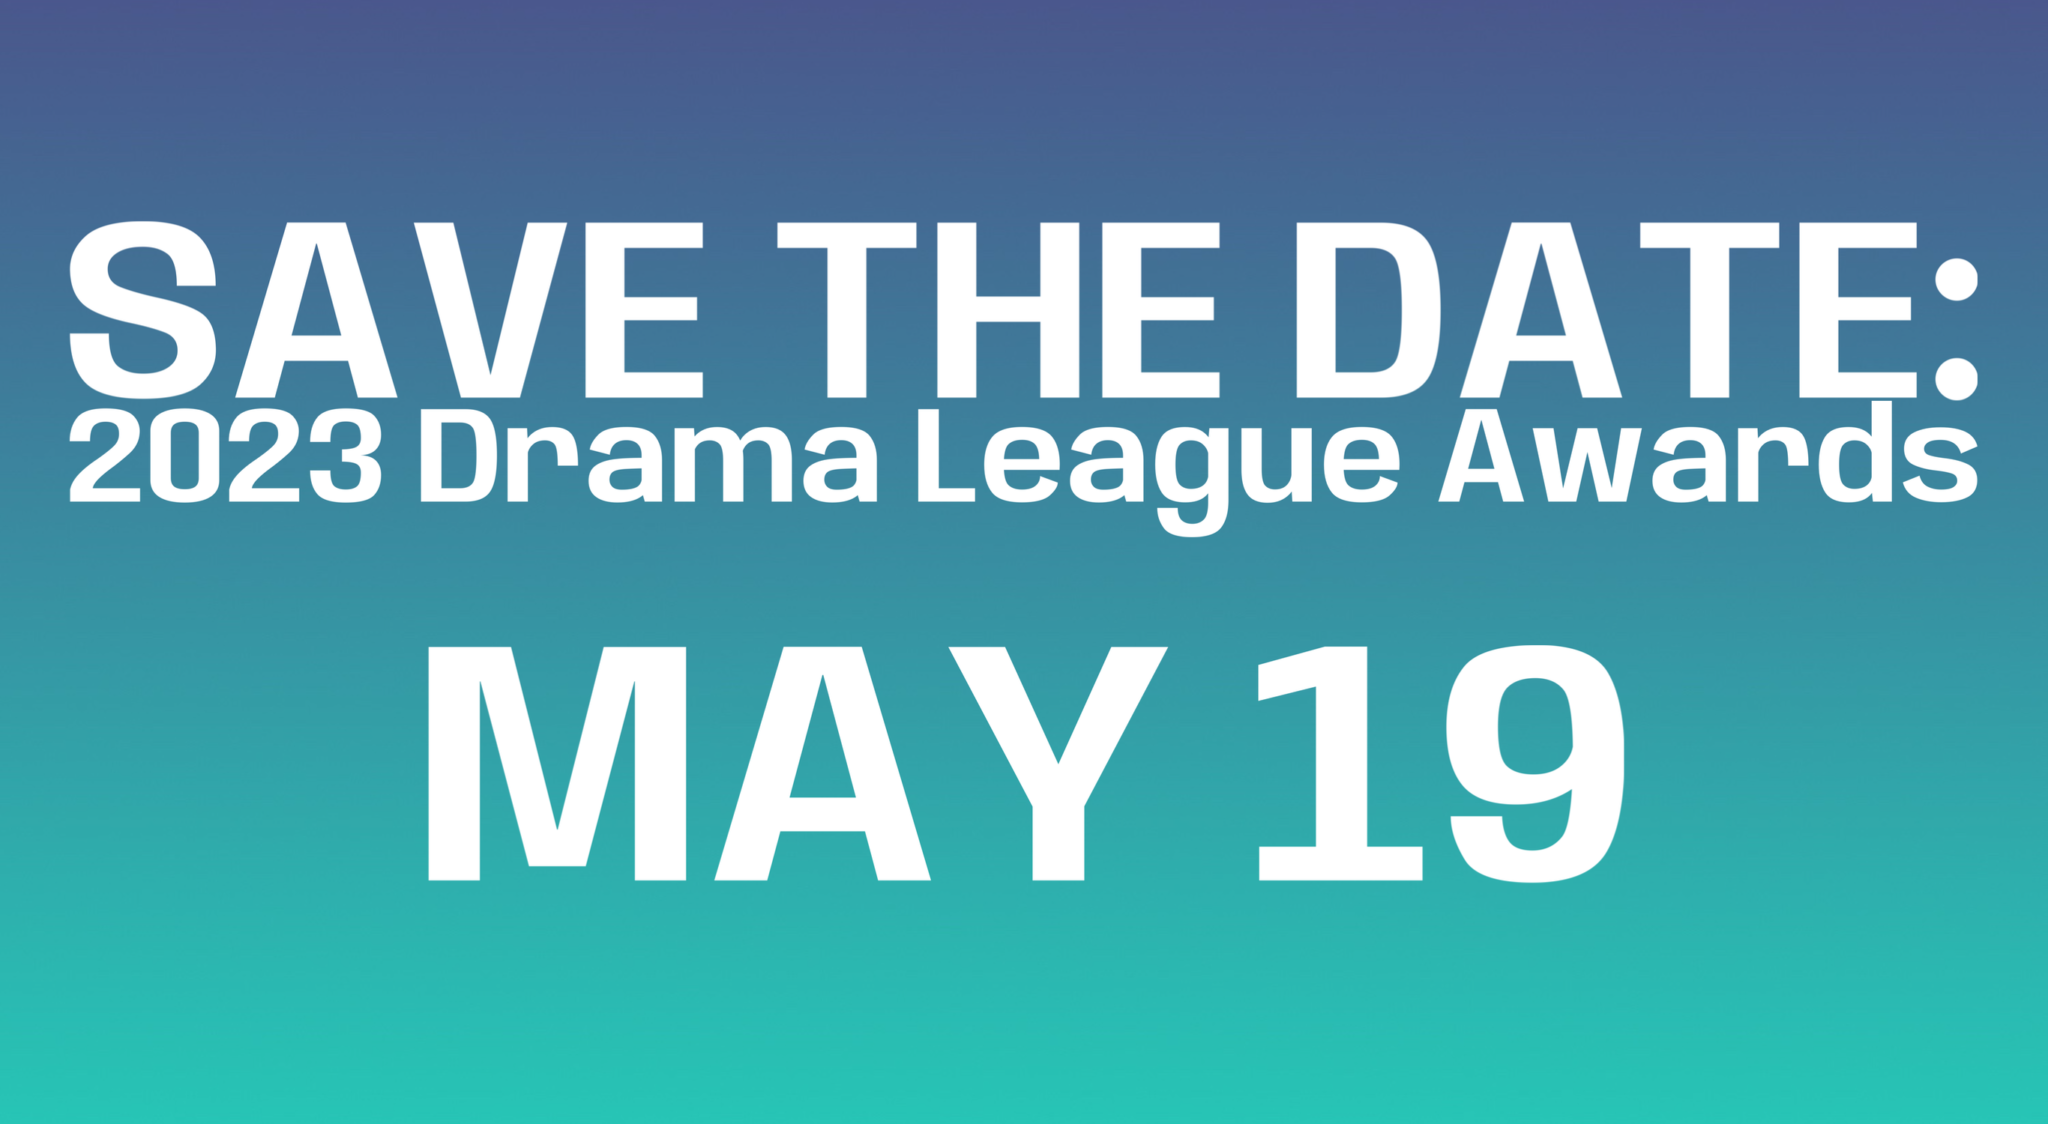 The Drama League The Drama League